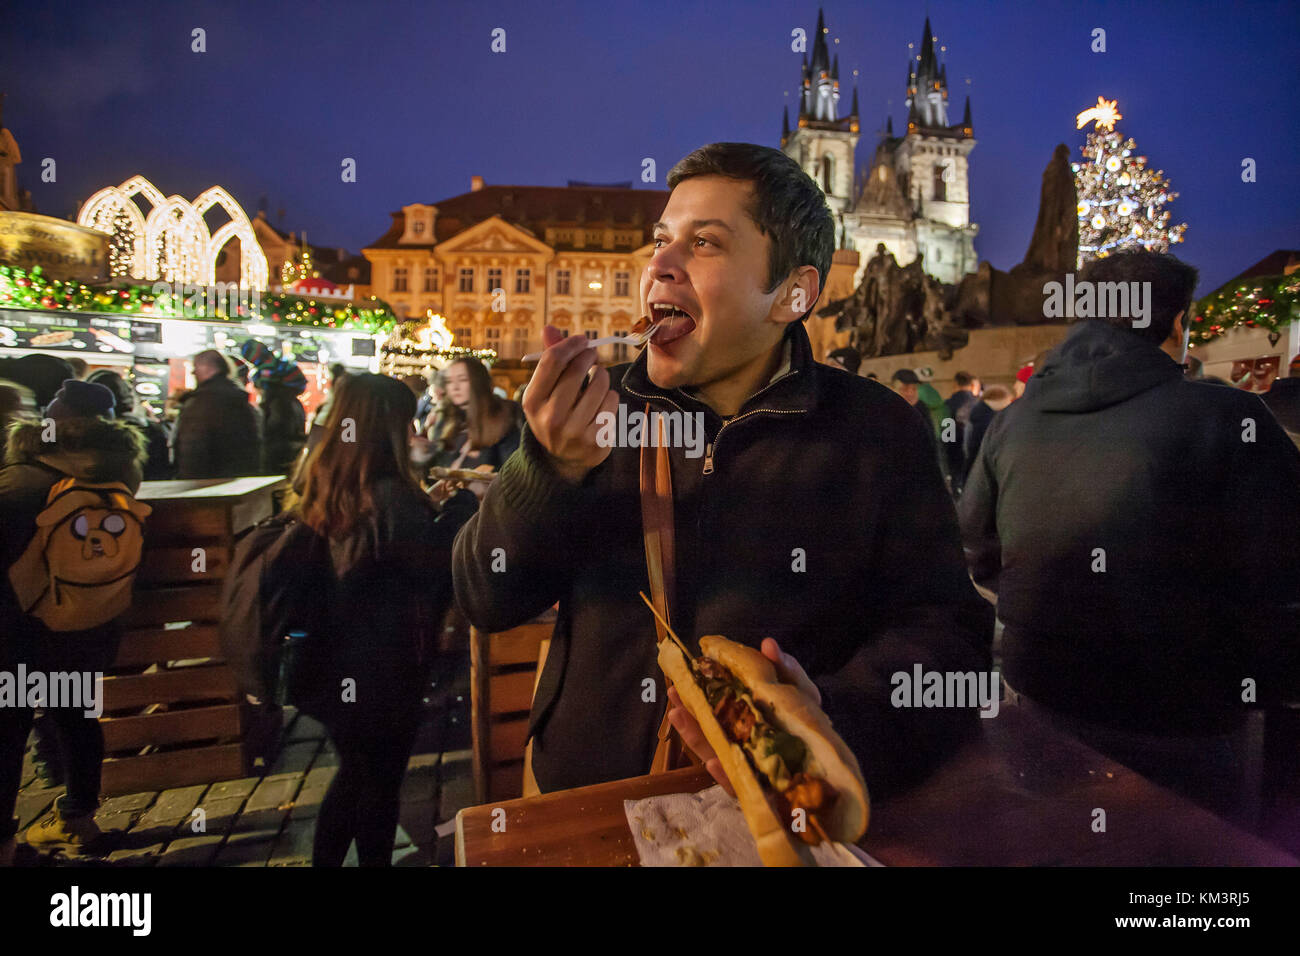 Mexikanische Touristen genießen Hot Chicken Fleischspieße von Weihnachten Kiosk während der Weihnachtsfeier der Beleuchtung einen Weihnachtsbaum am Altstädter Ring in Pr Stockfoto